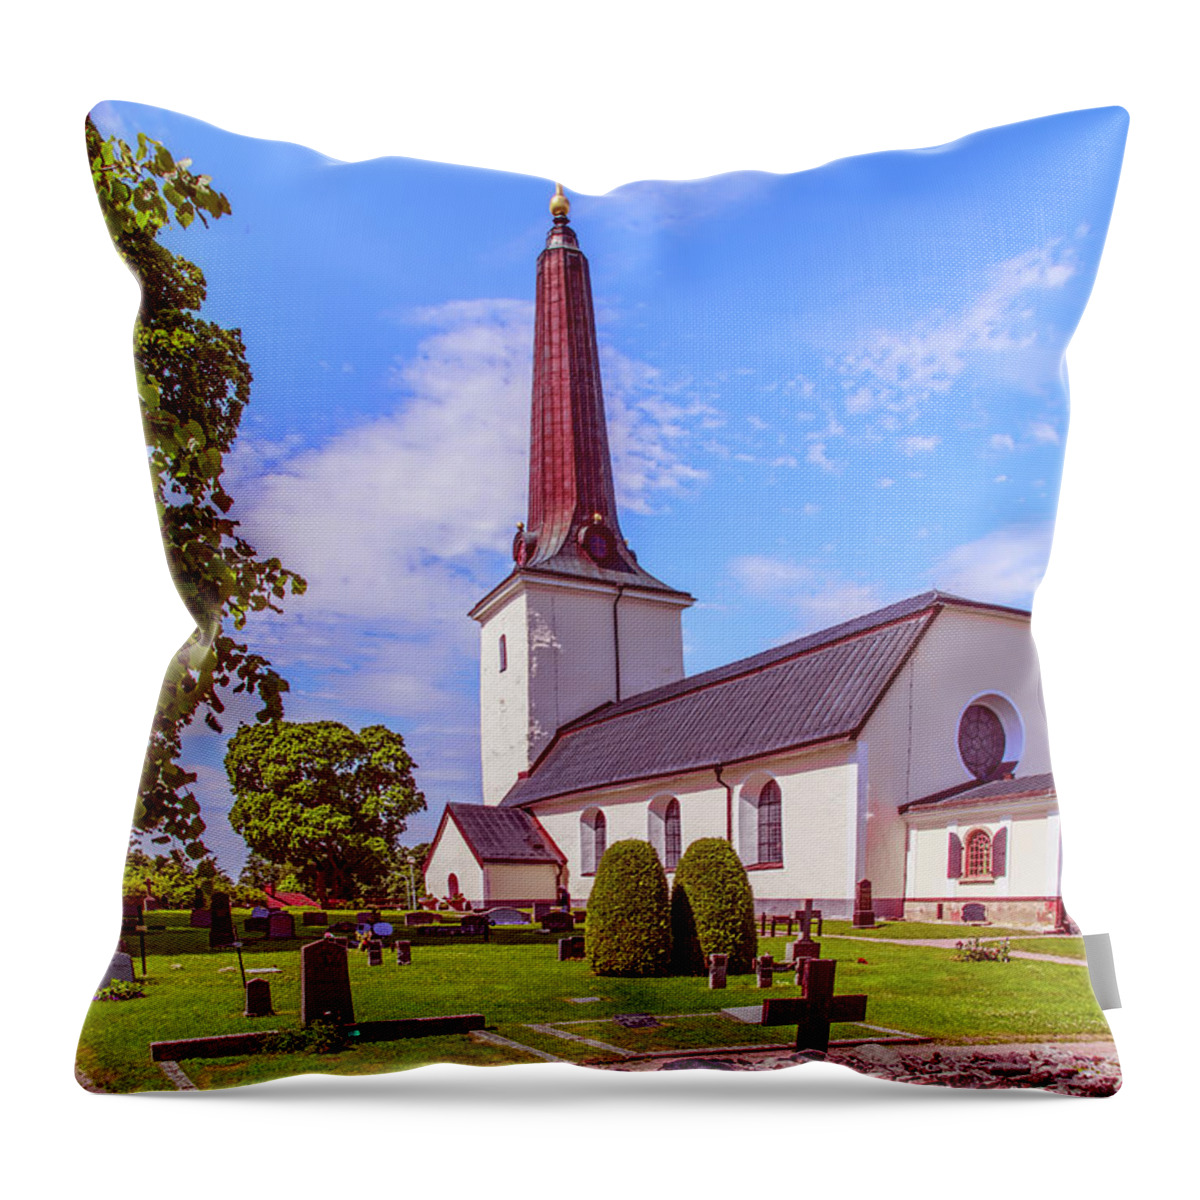 Irsta Church Throw Pillow featuring the photograph Irsta church. by Leif Sohlman